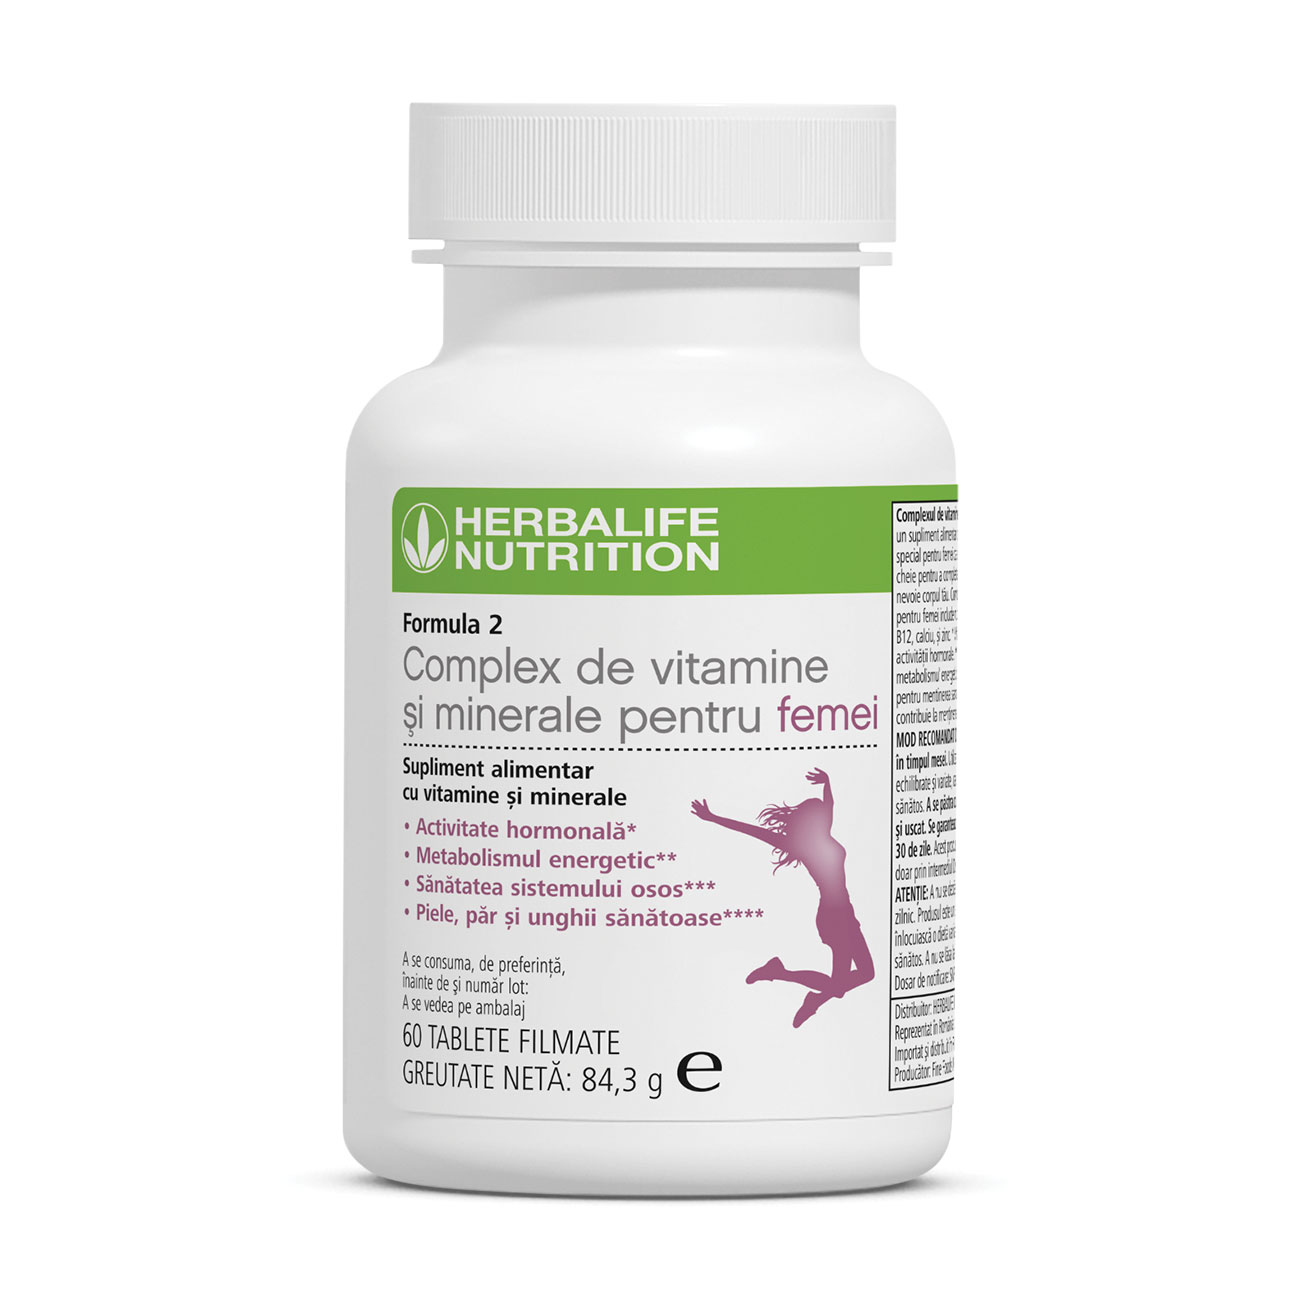 Formula 2 Complex de Vitamine & Minerale pentru femei Supliment alimentar product shot